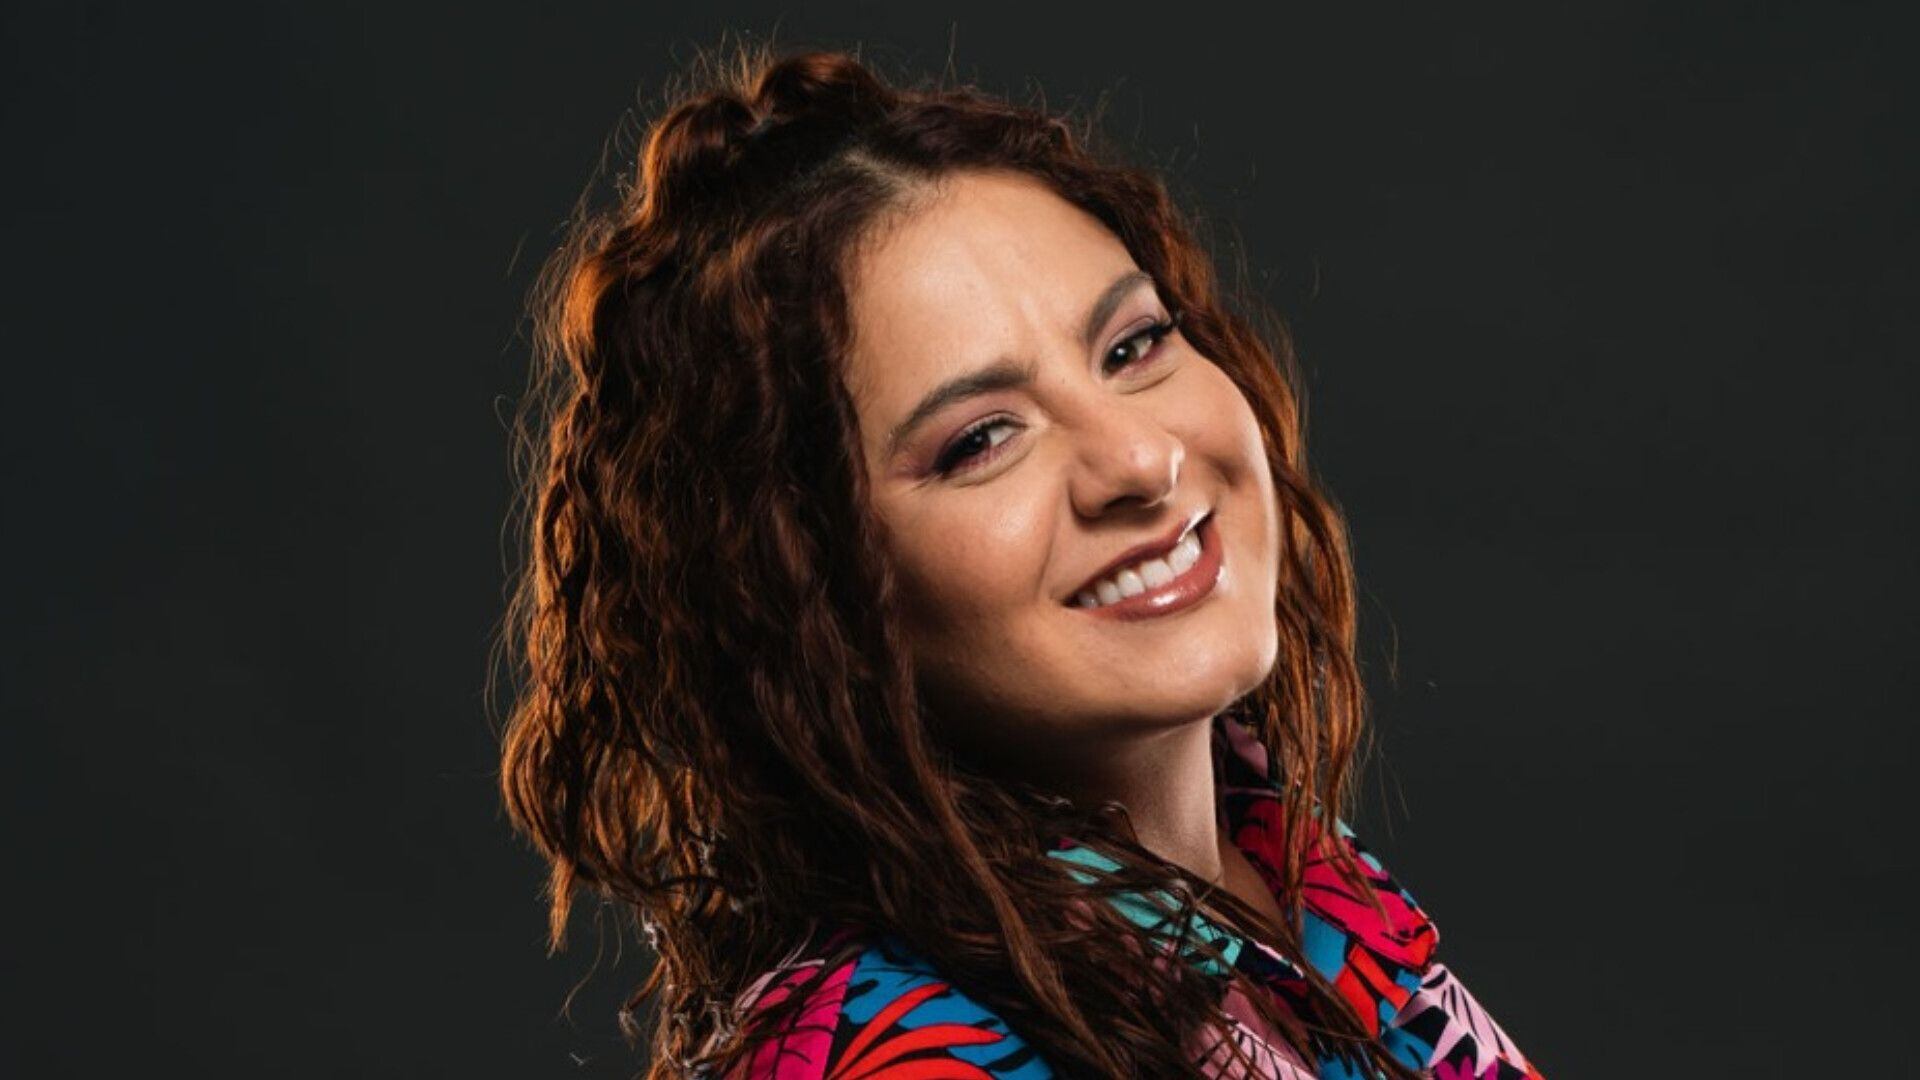 Xiomara Ramírez deja de lado las baladas y se aventuró en un reguetón con cumbia romántica